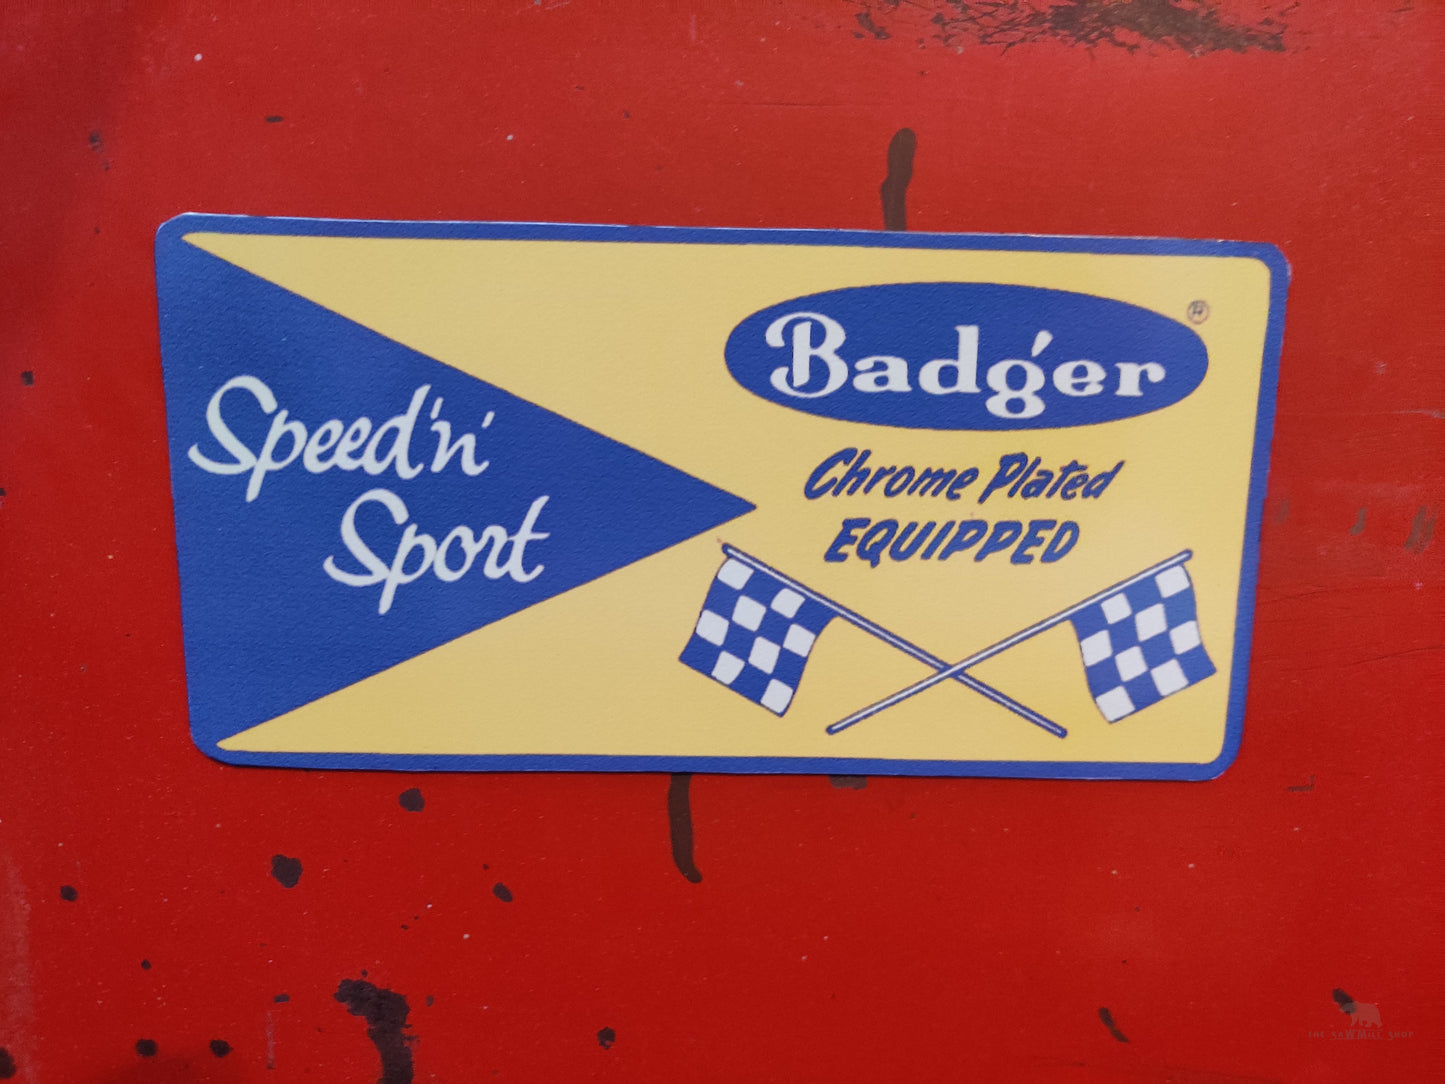 Badger Speed 'n' Sport Magnet